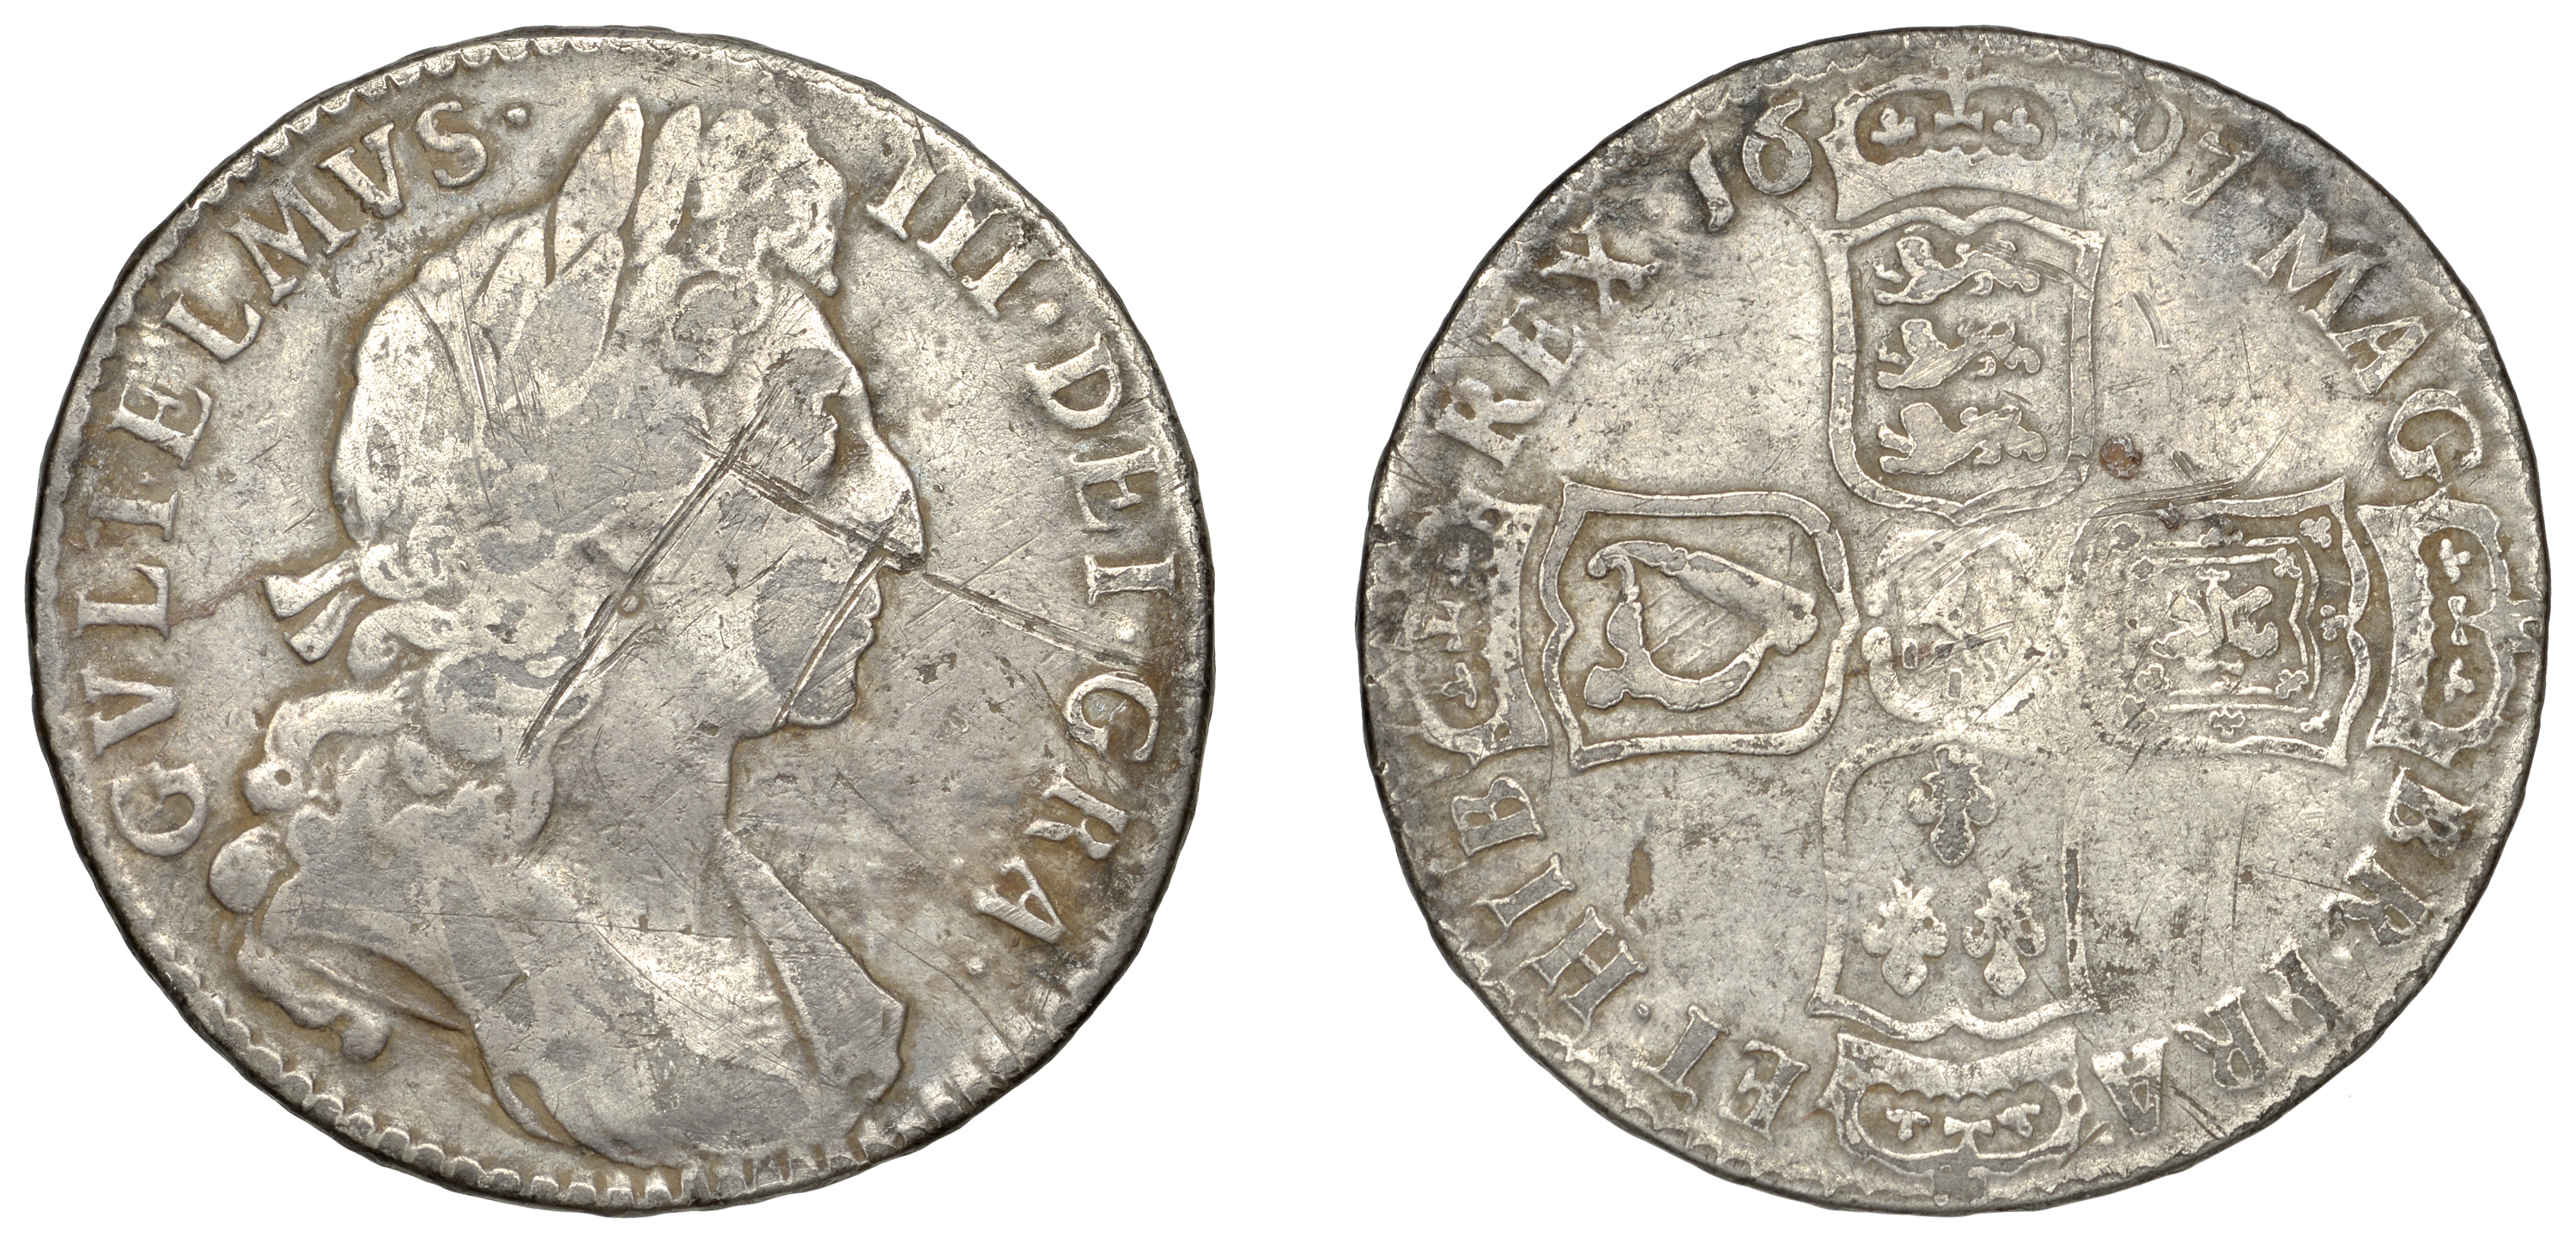 William III (1694-1702), Halfcrown, 1697, edge nono (ESC 1021; S 3487). About fine, surface...